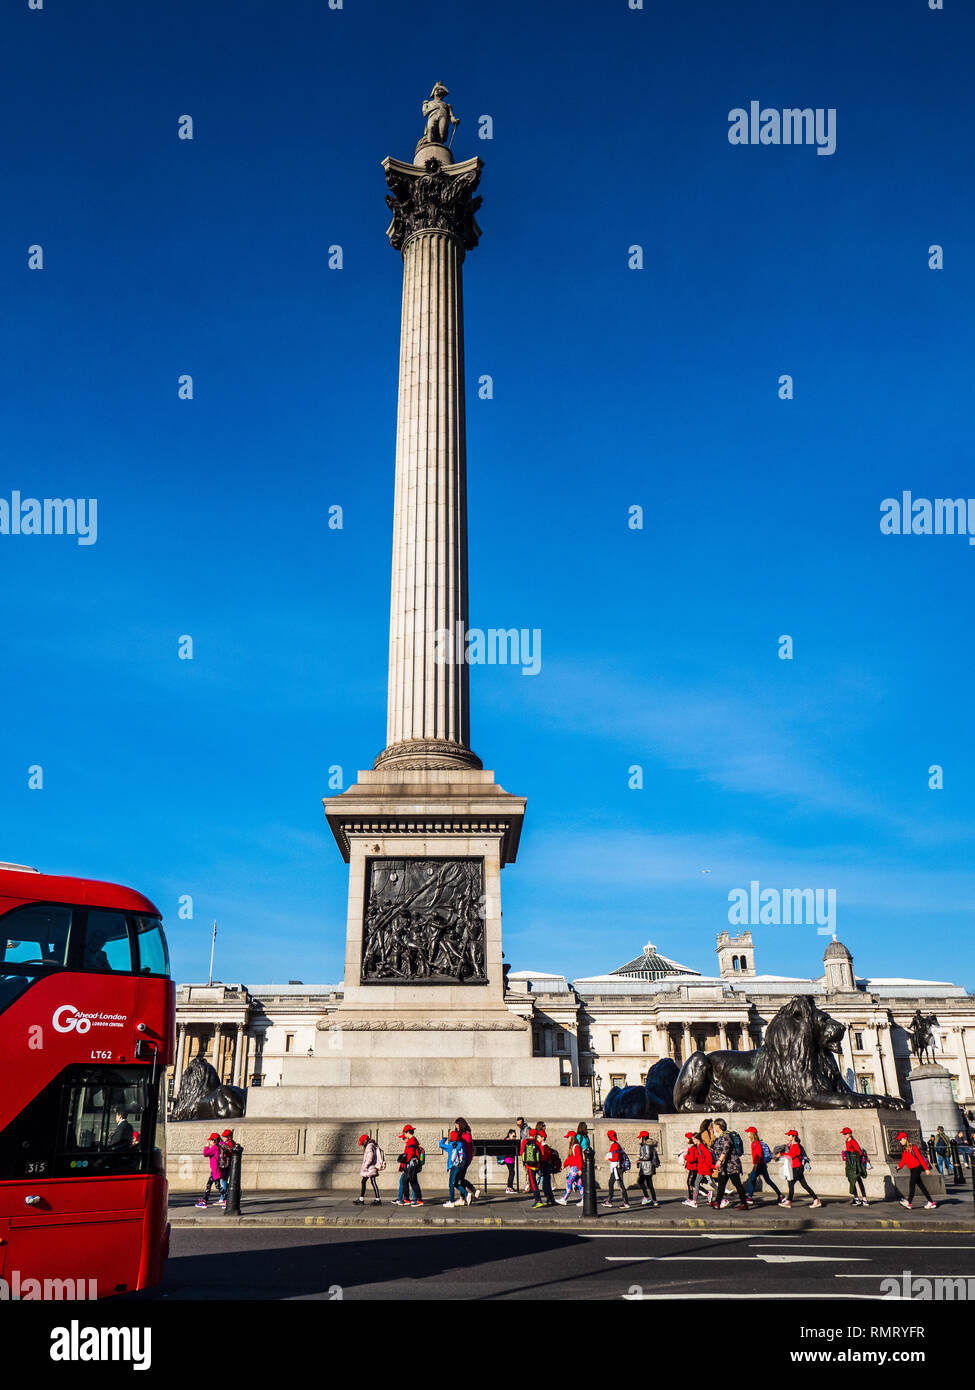 Turismo a Londra - Trafalgar Square di Nelson's colonna con una Londra autobus Routemaster Foto Stock